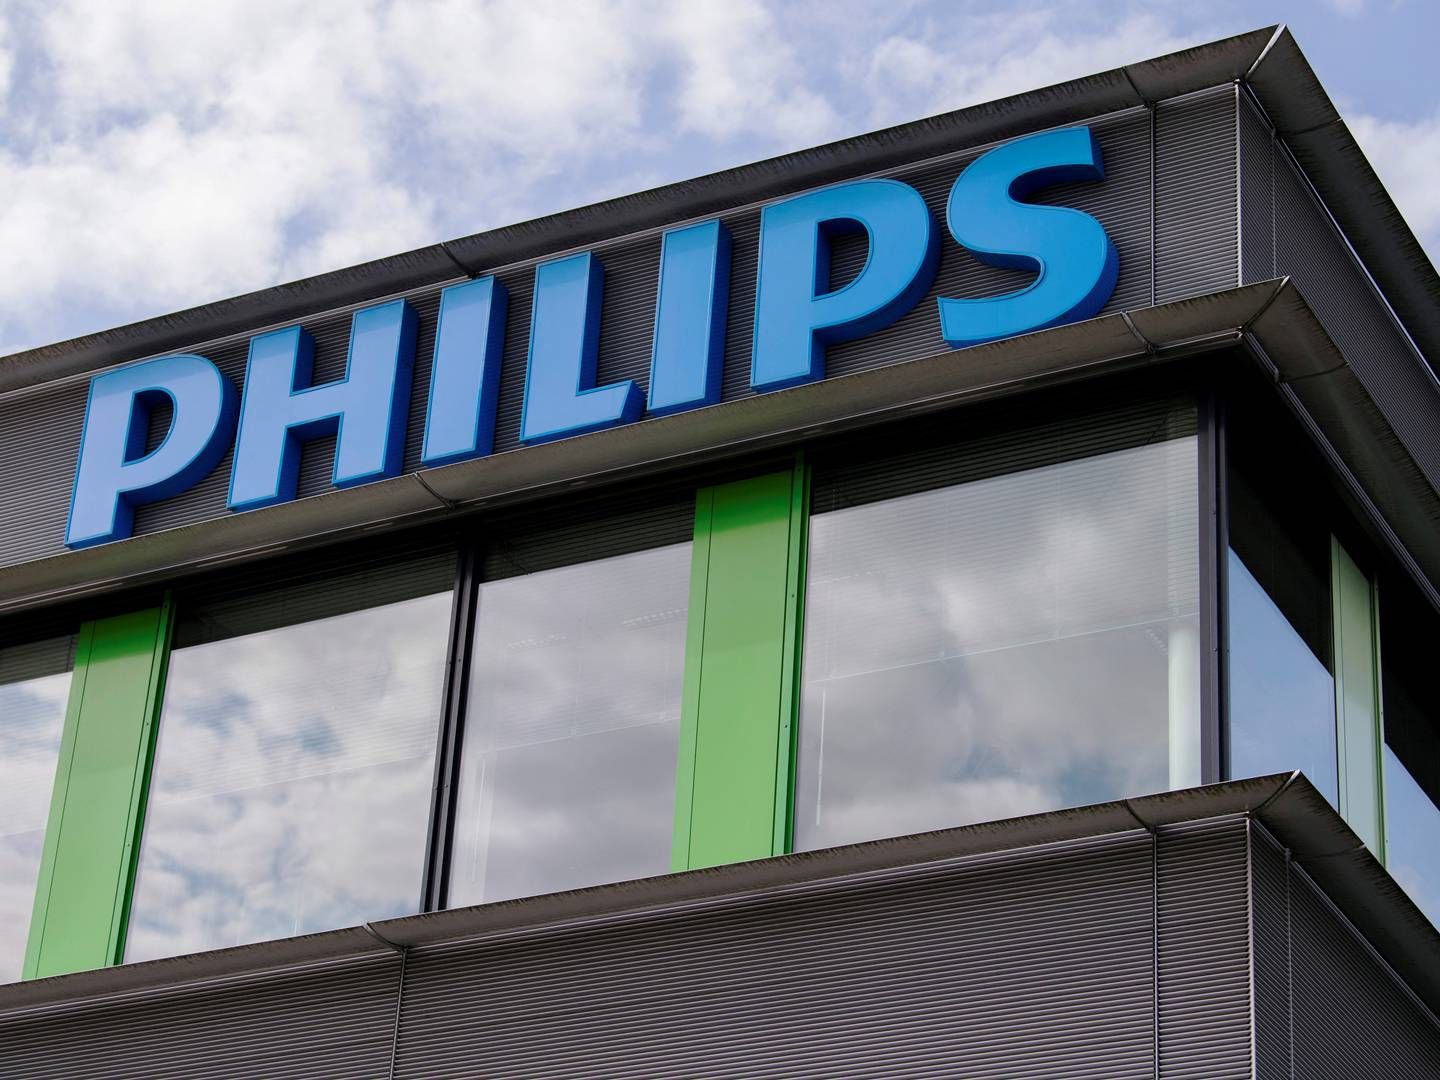 INGEN INNRØMMELSE: Philips har gått med på å betale et forlik på 660 millioner norske kroner, men hverken innrømmer eller avviser beskyldningene fra Finanstilsynet i USA. | Foto: Piroschka Van De Wouw